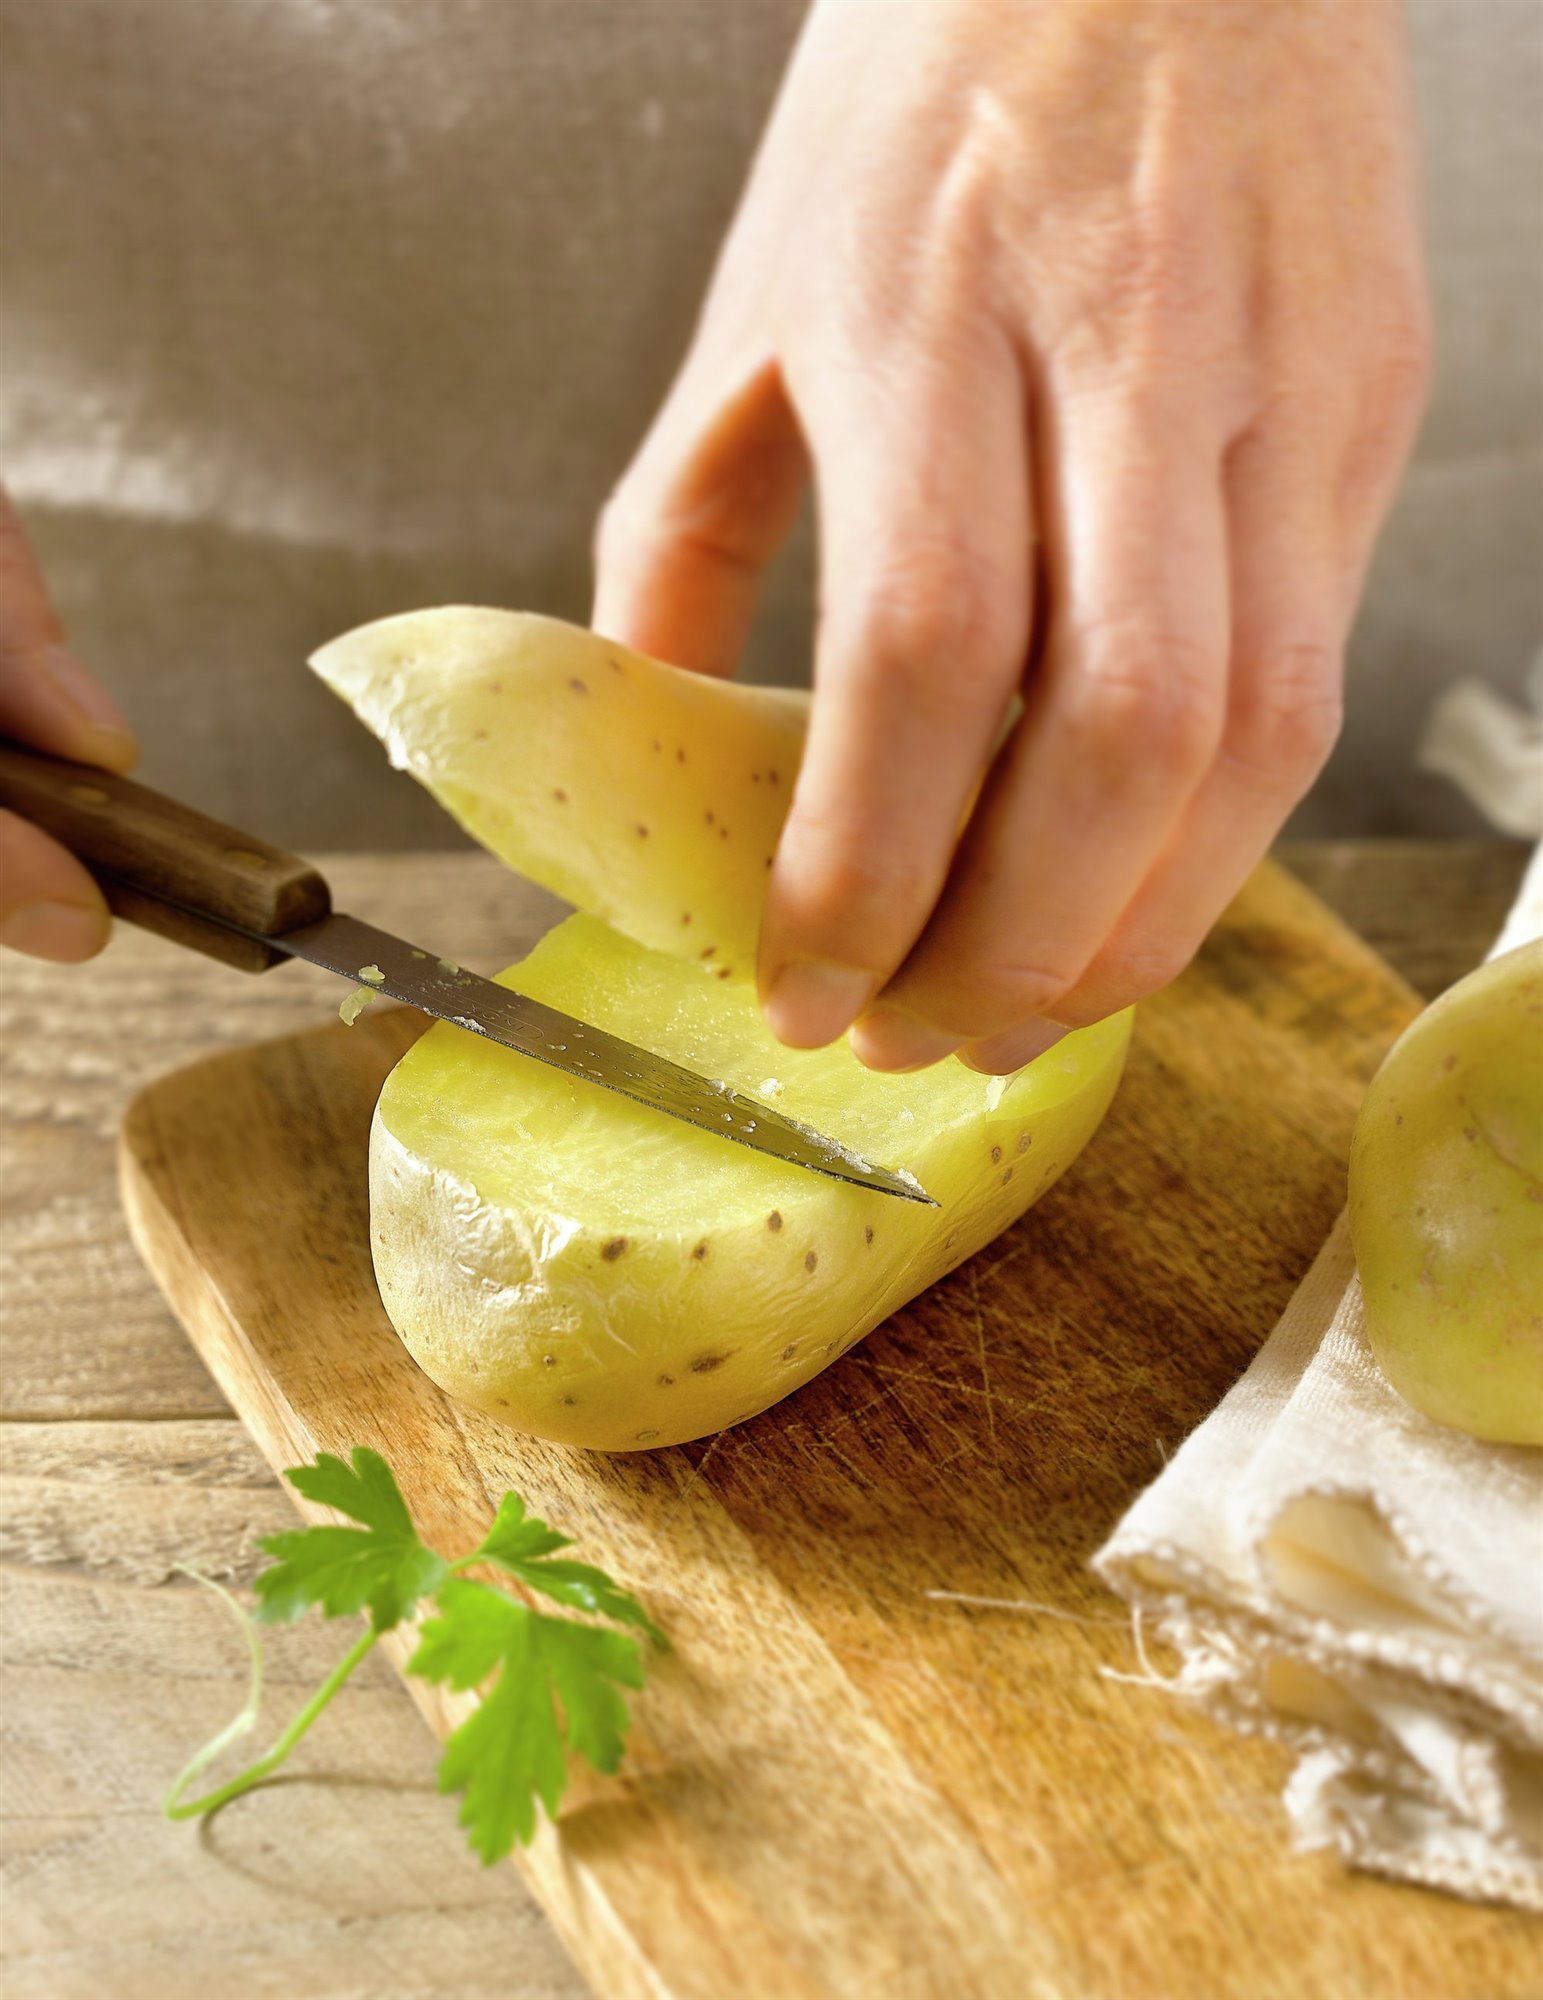 4. Corta las patatas cocidas